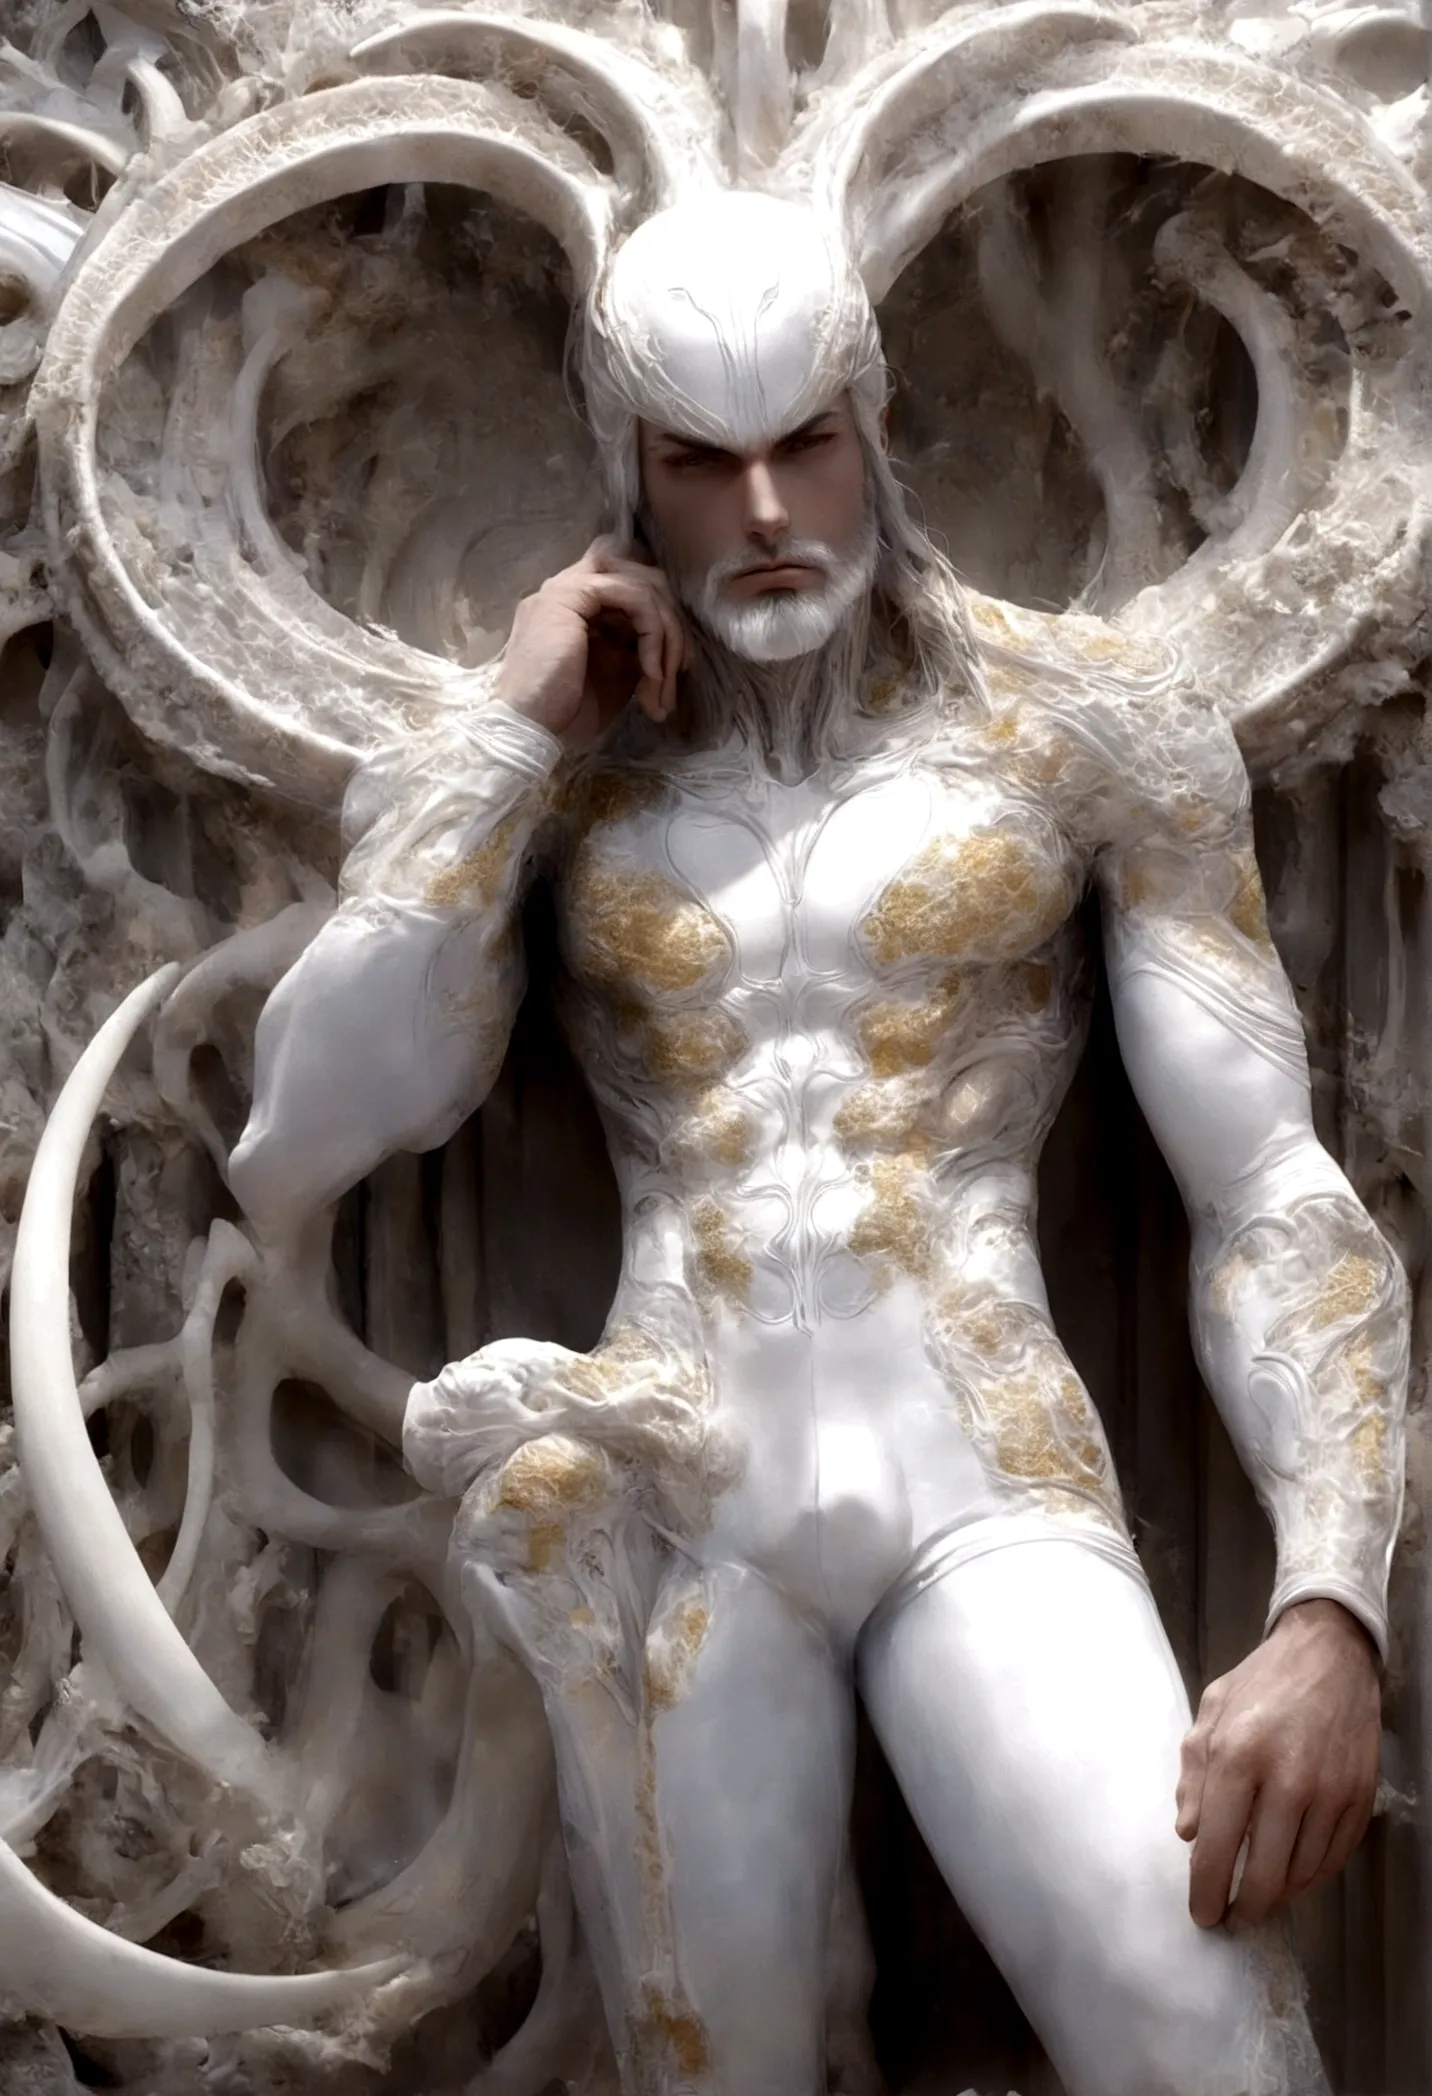 Crie uma obra de arte em 3D de um homem celestial usando um roupa branca adornado com (((detalhes intrincados))). A obra deve in...